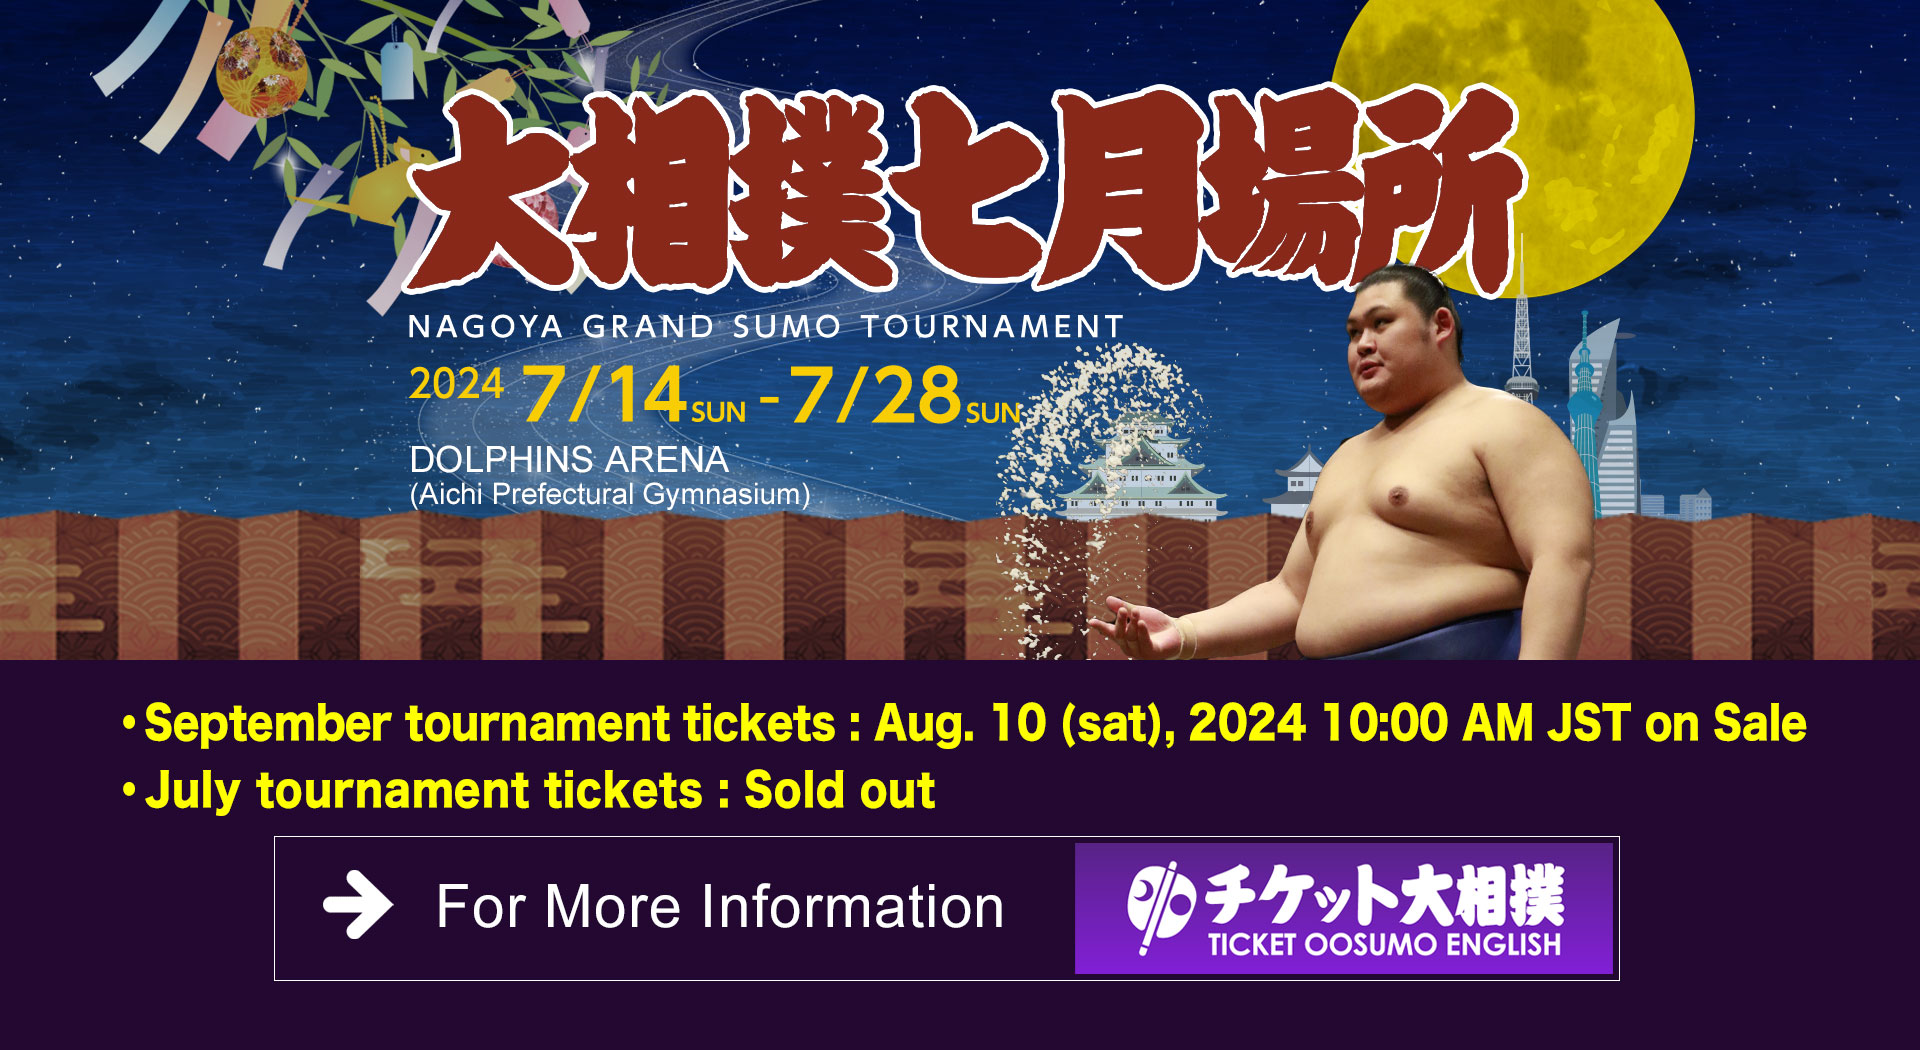 2023 July Grand Sumo Tournament